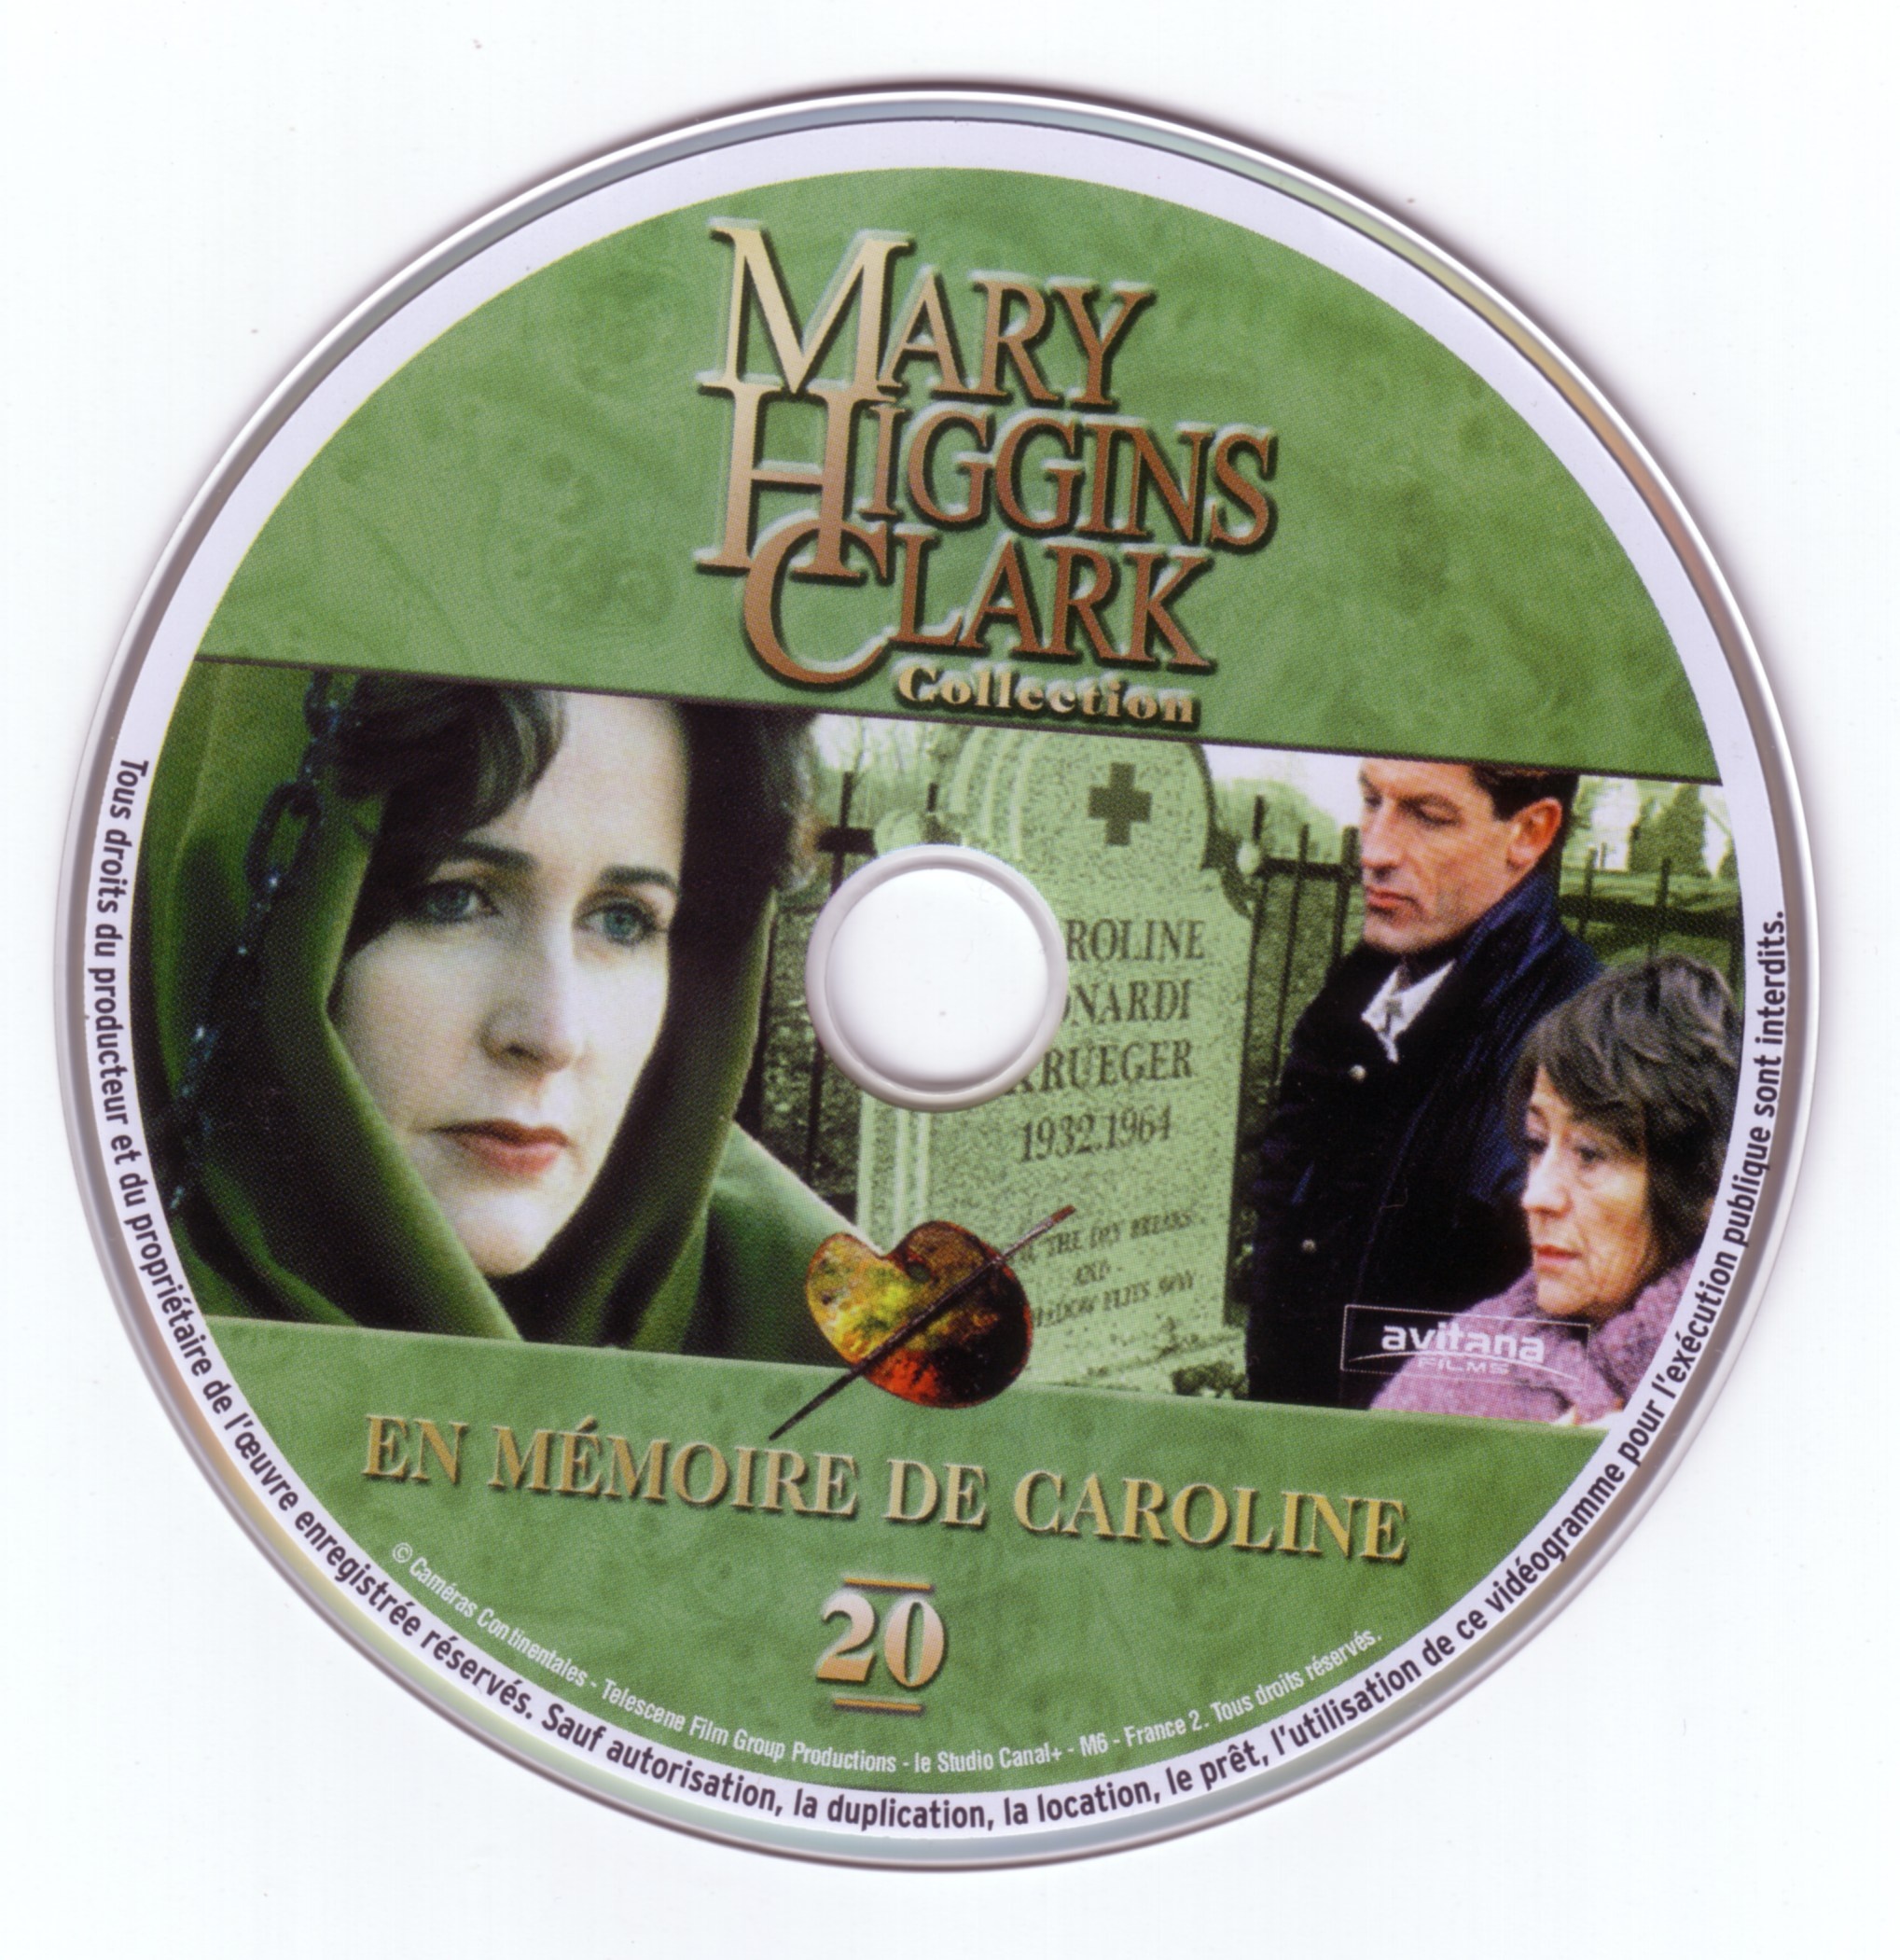 Mary Higgins Clark vol 20 - En mmoire de Caroline